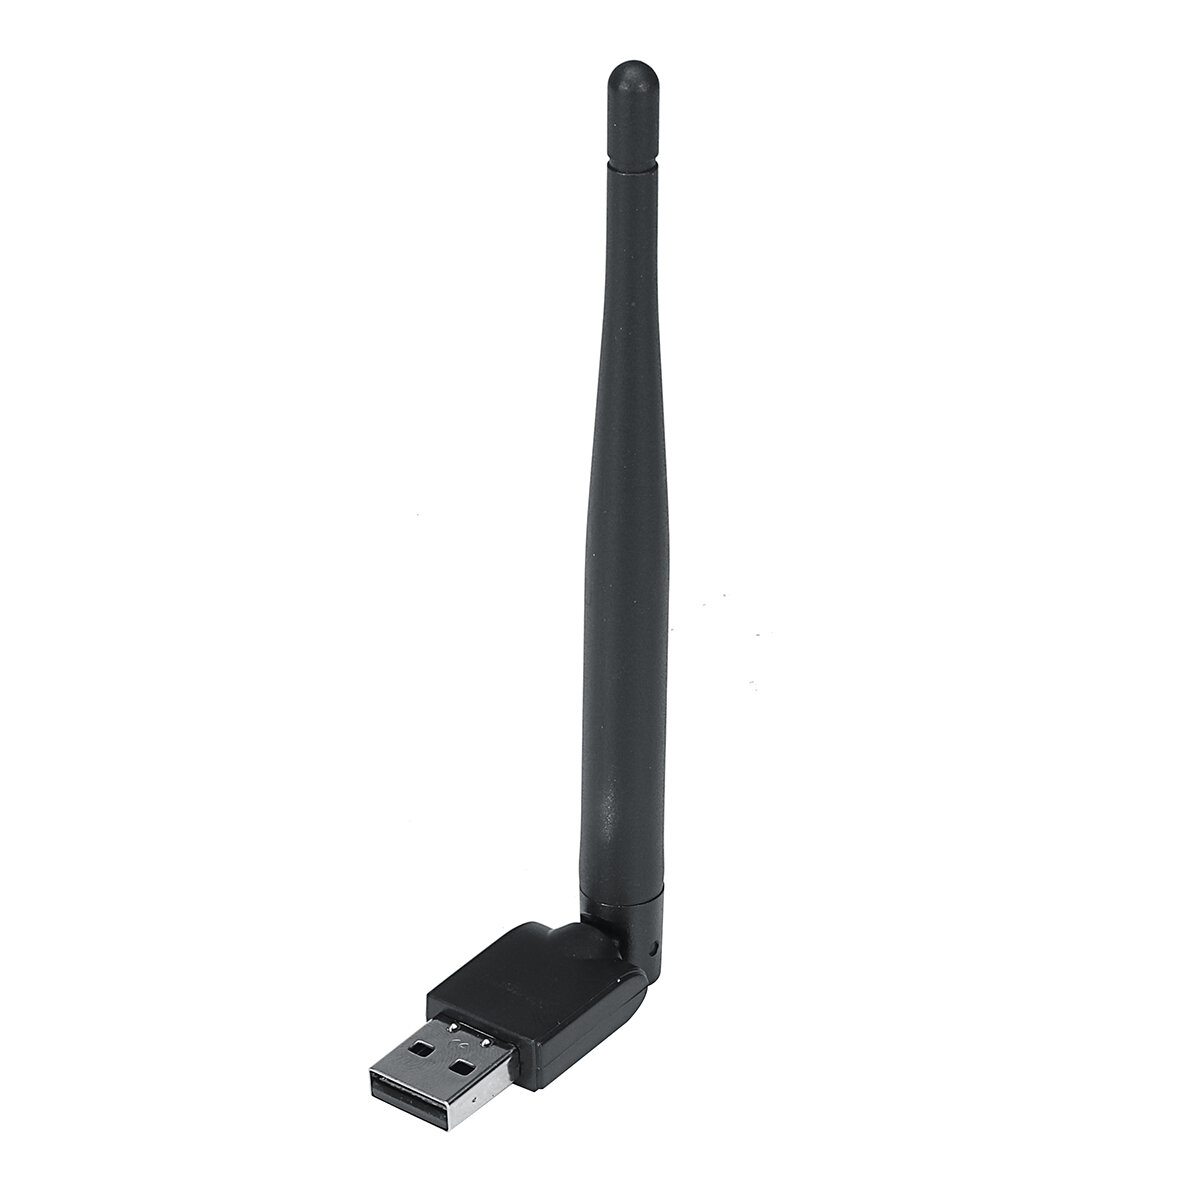 

MT7601 7601 USB-адаптер WIFI 150 Мбит/с 2,4 ГГц Антенна USB 802.11n/g/b Ethernet Wi-Fi Dongle USB LAN Беспроводная сетев